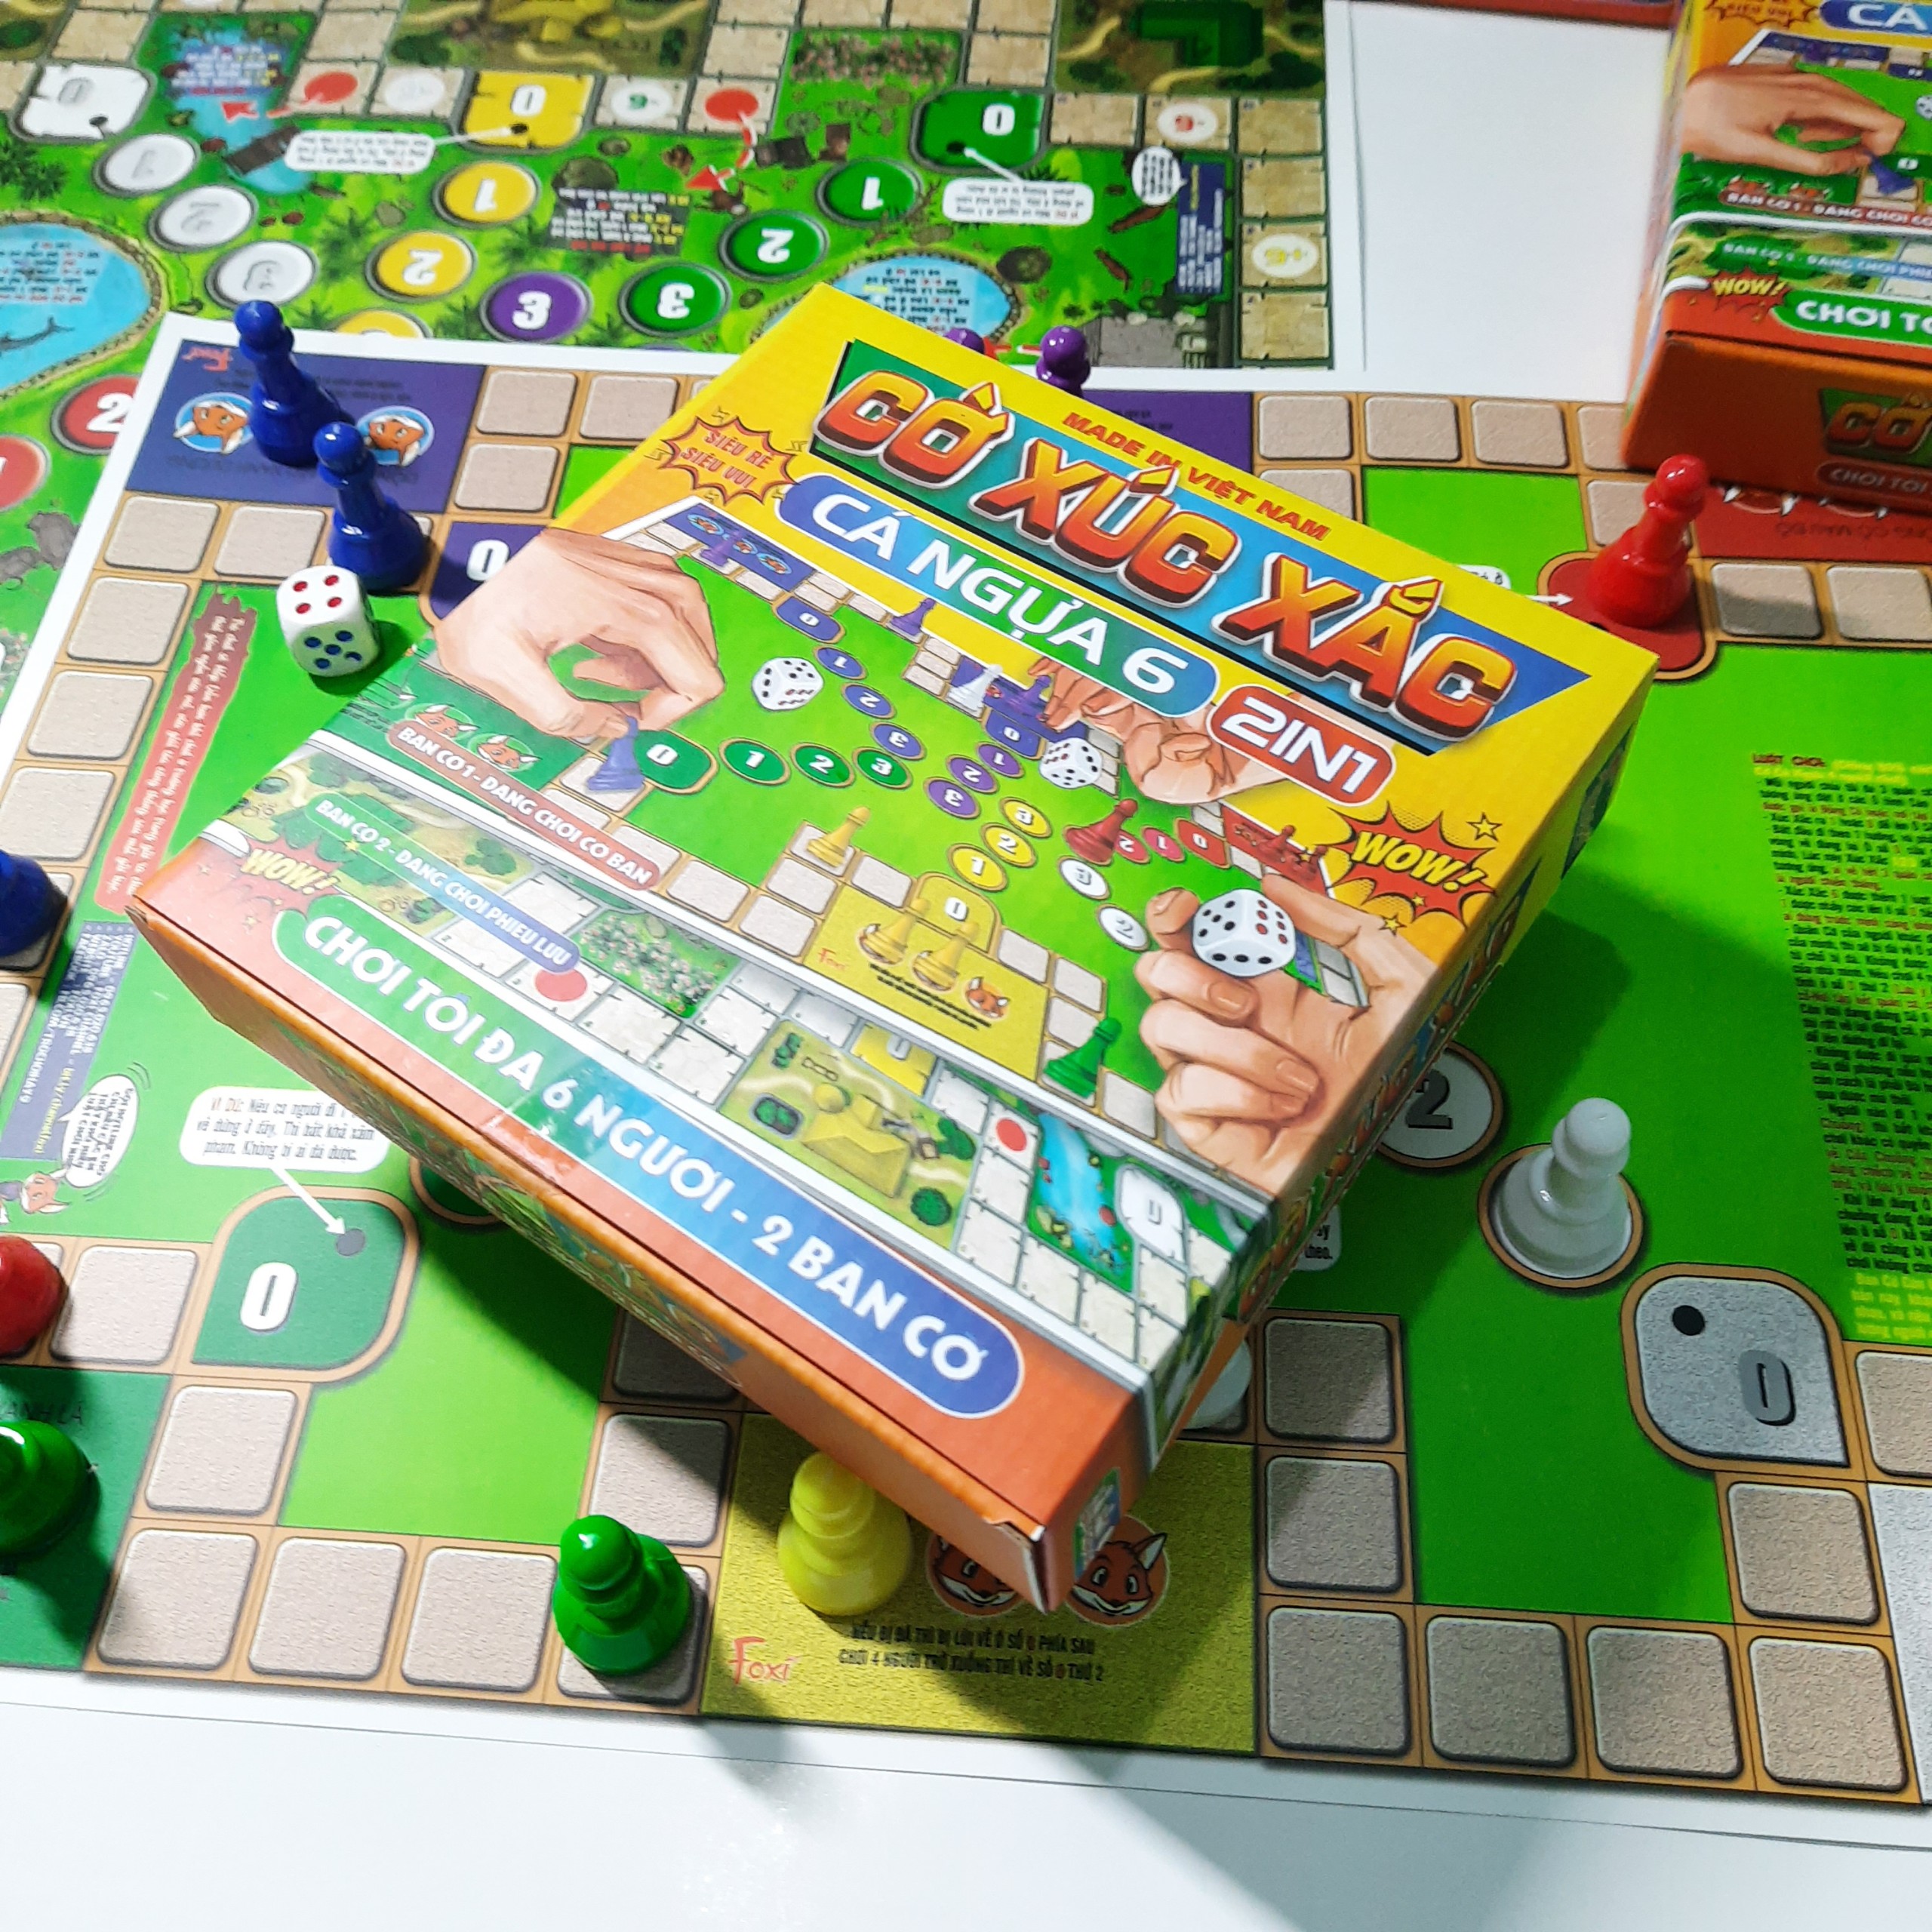 Board game-Cờ xúc xắc cá ngựa 6 người chơi Foxi-đồ chơi phát triển tư duy-dễ chơi-vui nhộn-giá siêu rẻ